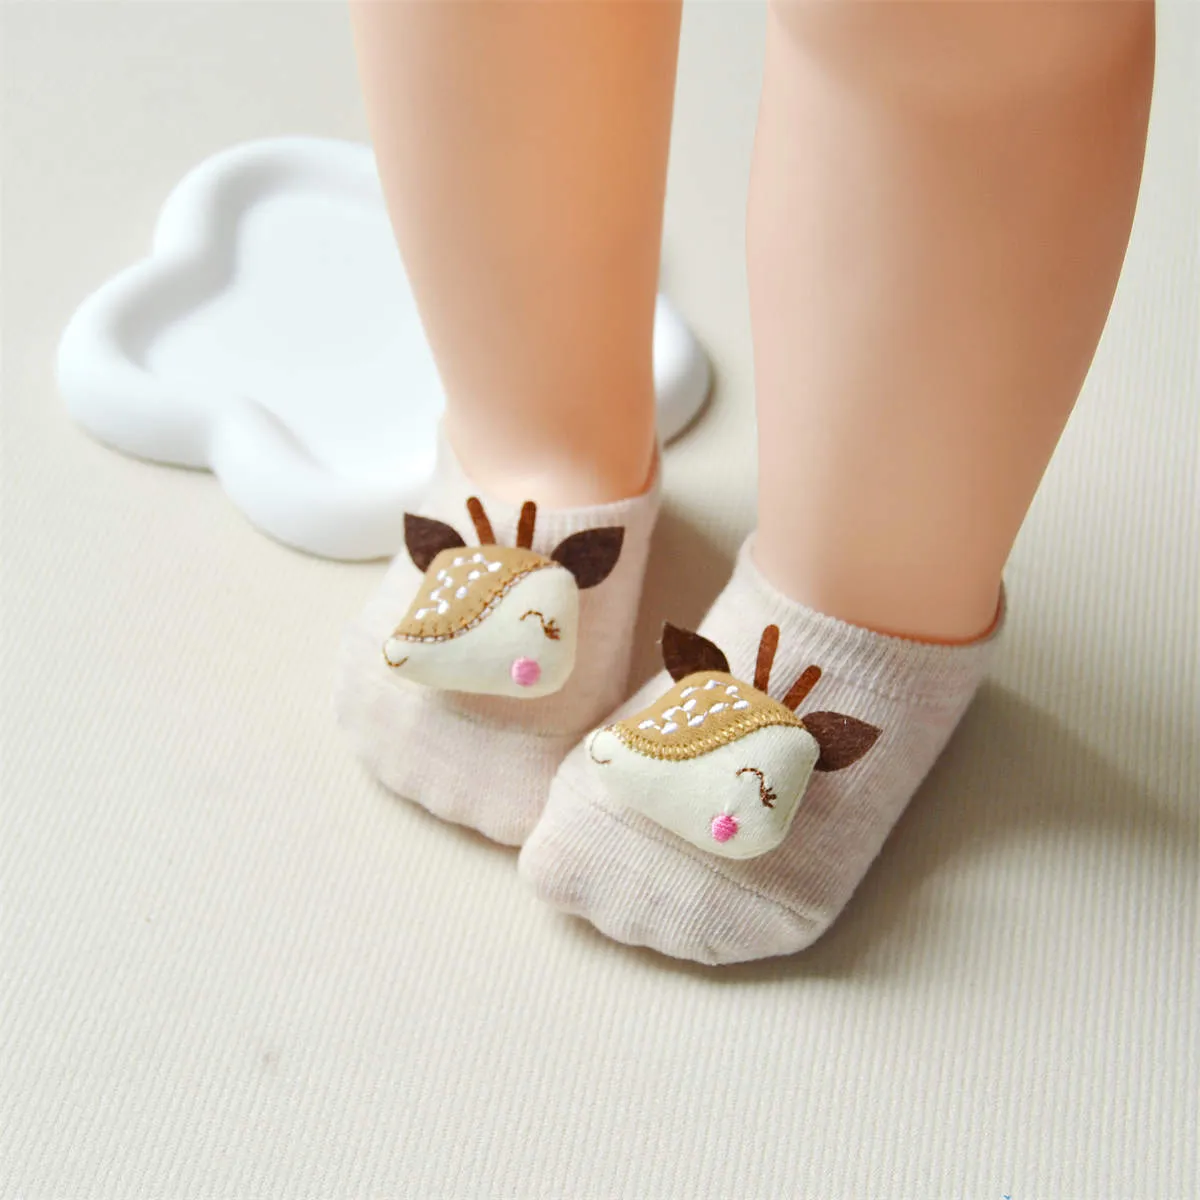 嬰兒/幼兒女孩動物貼花防滑棉質地板襪 卡其色 big image 1